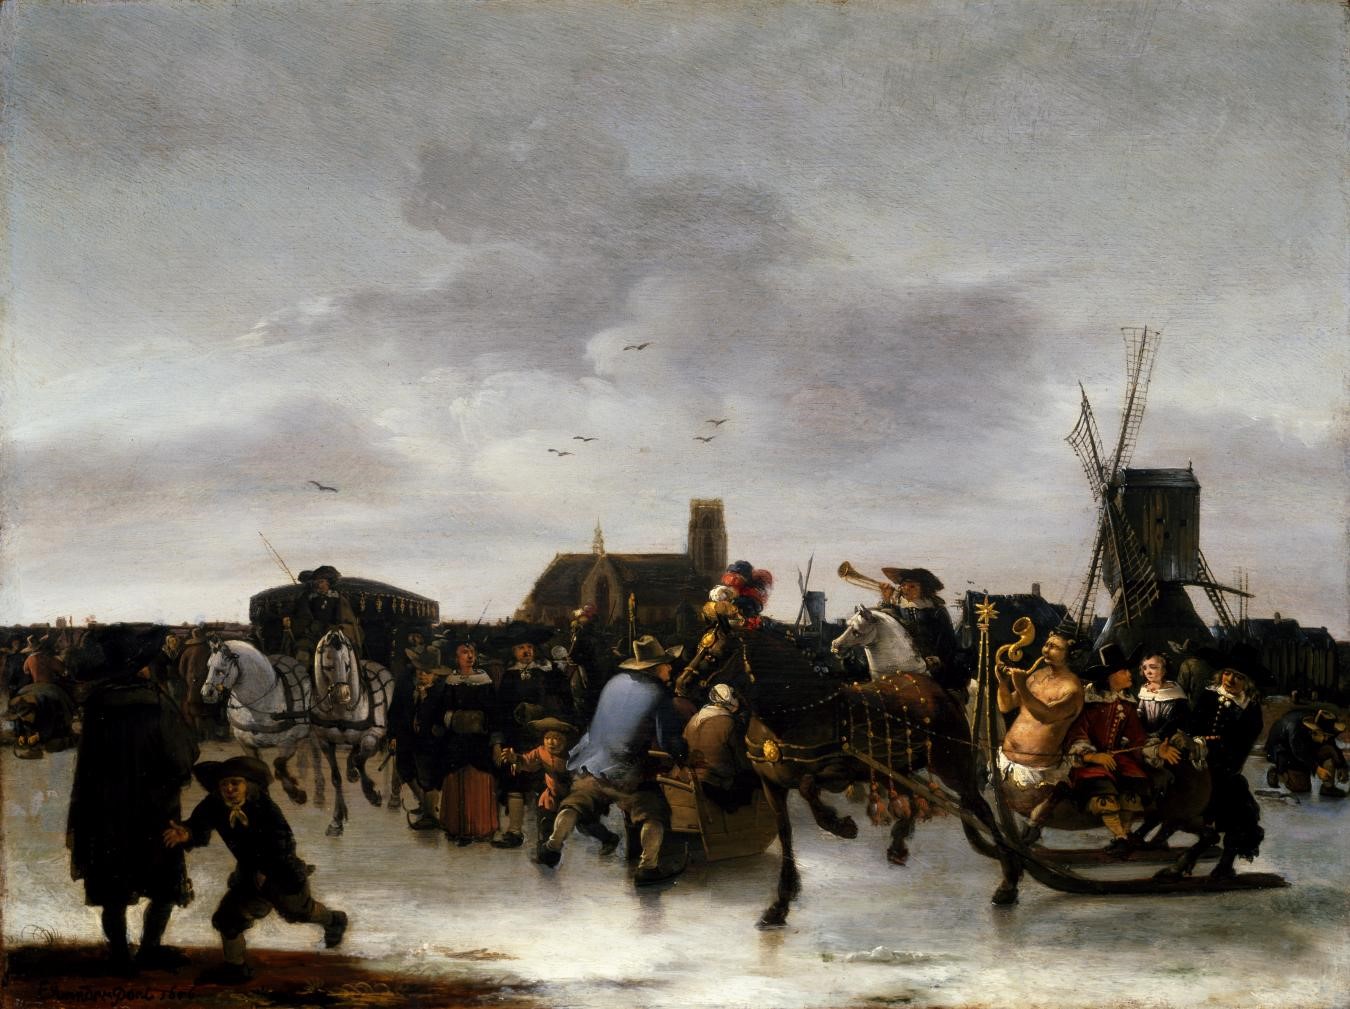 Egbert van der Poel, A Skating Scene, 1856